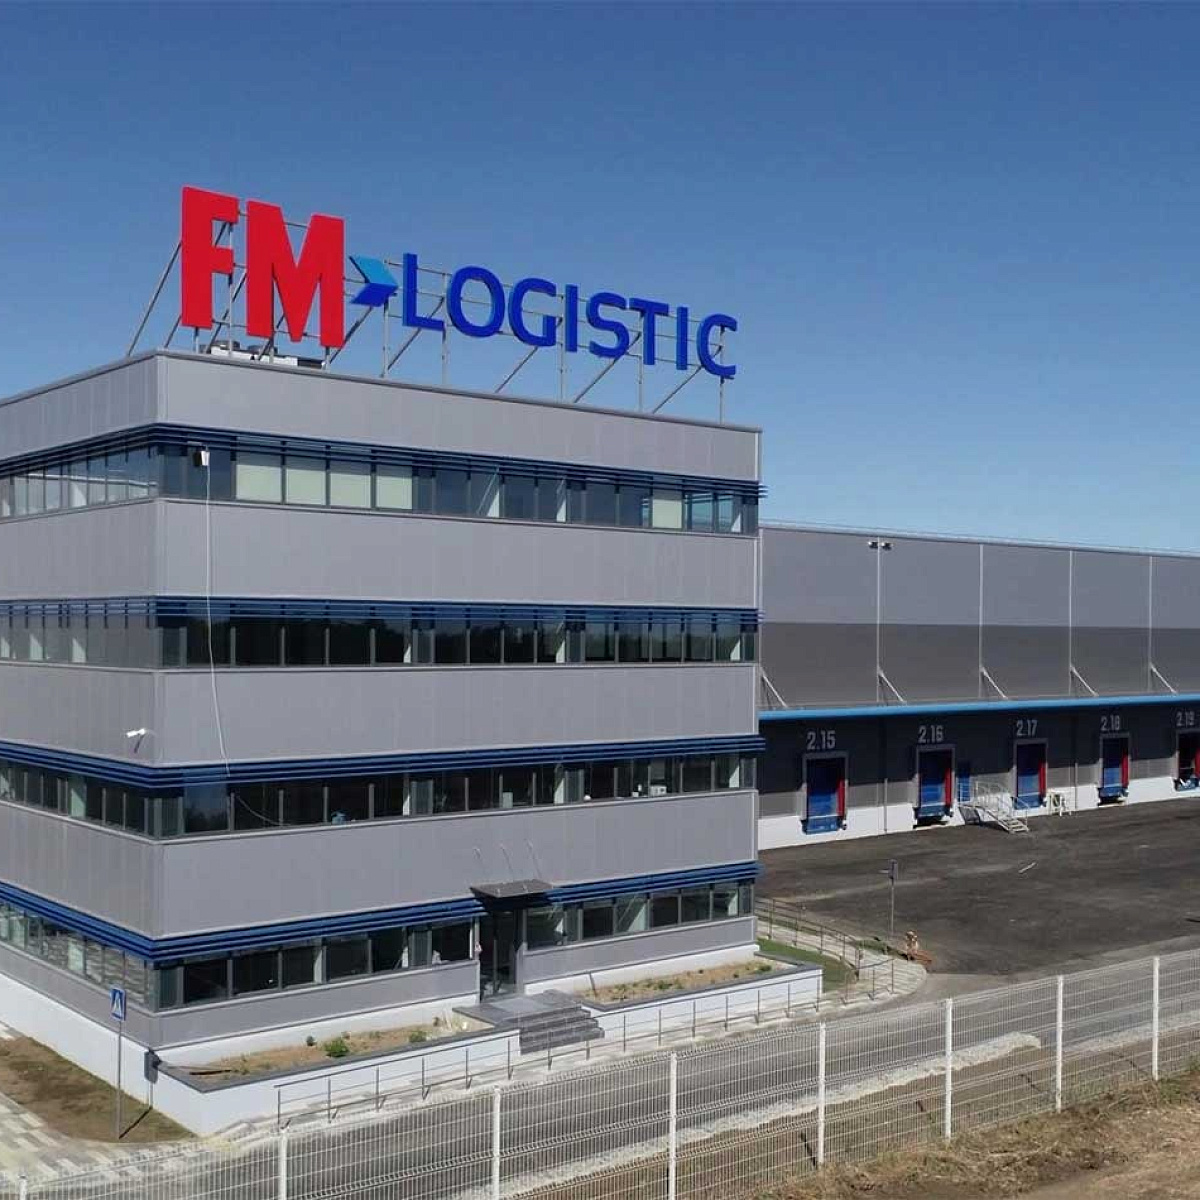 FM Logistic Дмитров